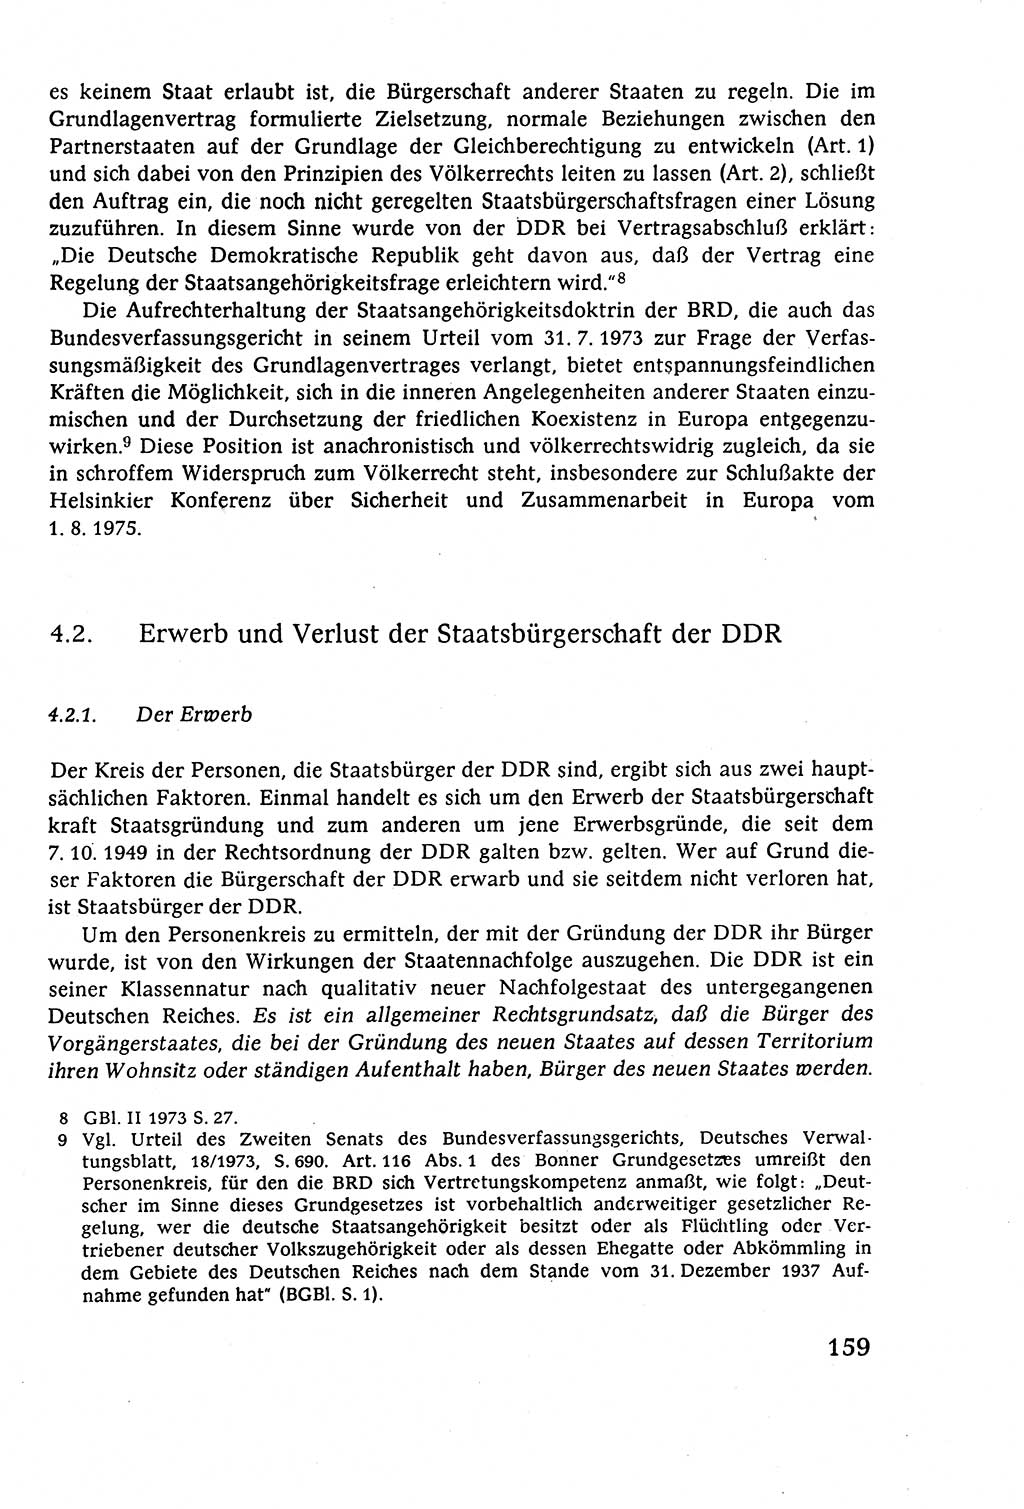 Staatsrecht der DDR (Deutsche Demokratische Republik), Lehrbuch 1977, Seite 159 (St.-R. DDR Lb. 1977, S. 159)